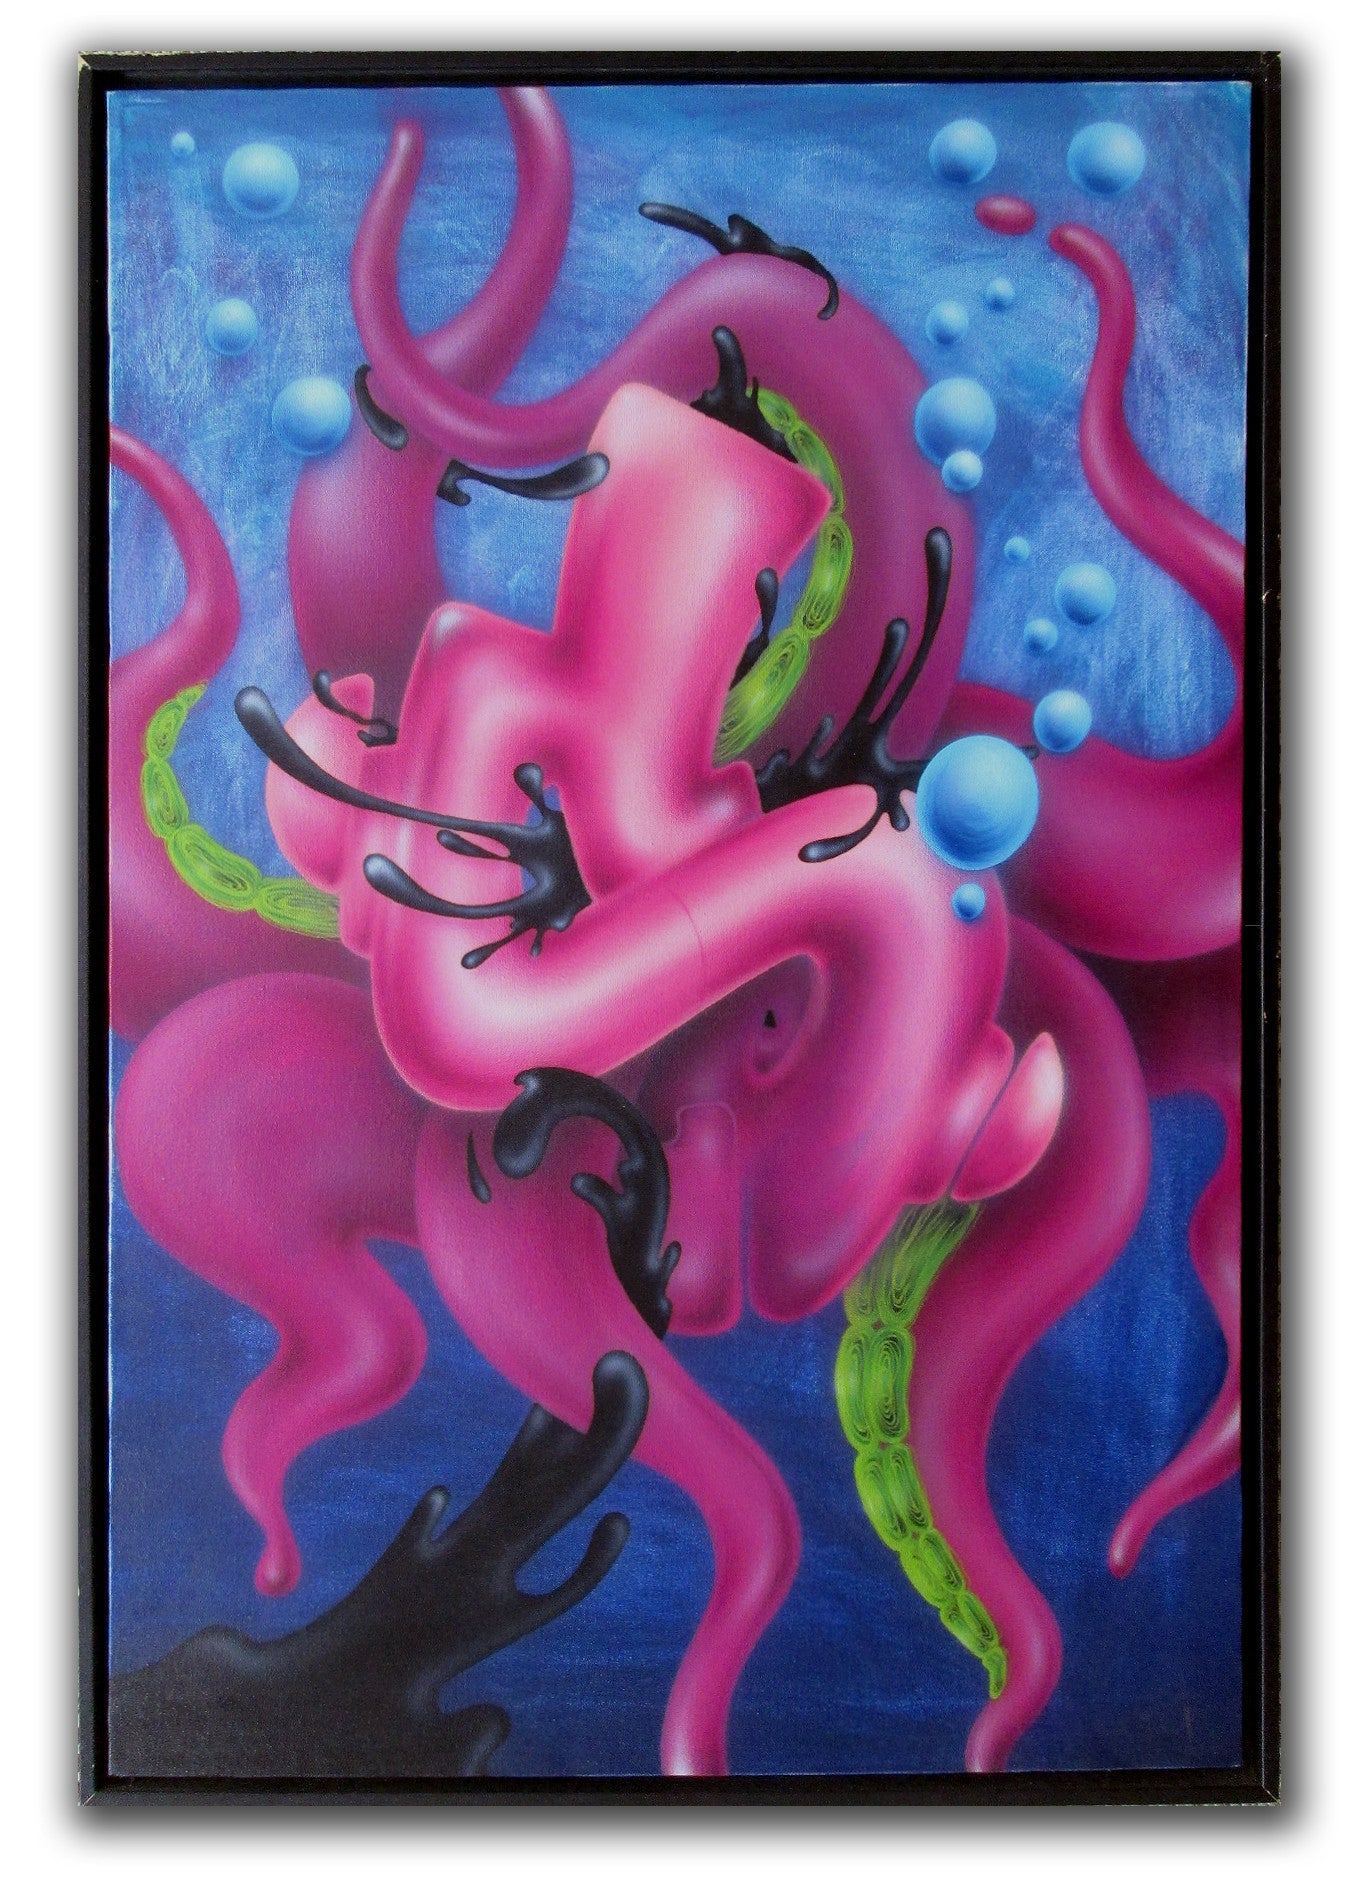 GRAFFITI ARTIST SEEN -  "Octo-Seen"  Airbrush on Canvas